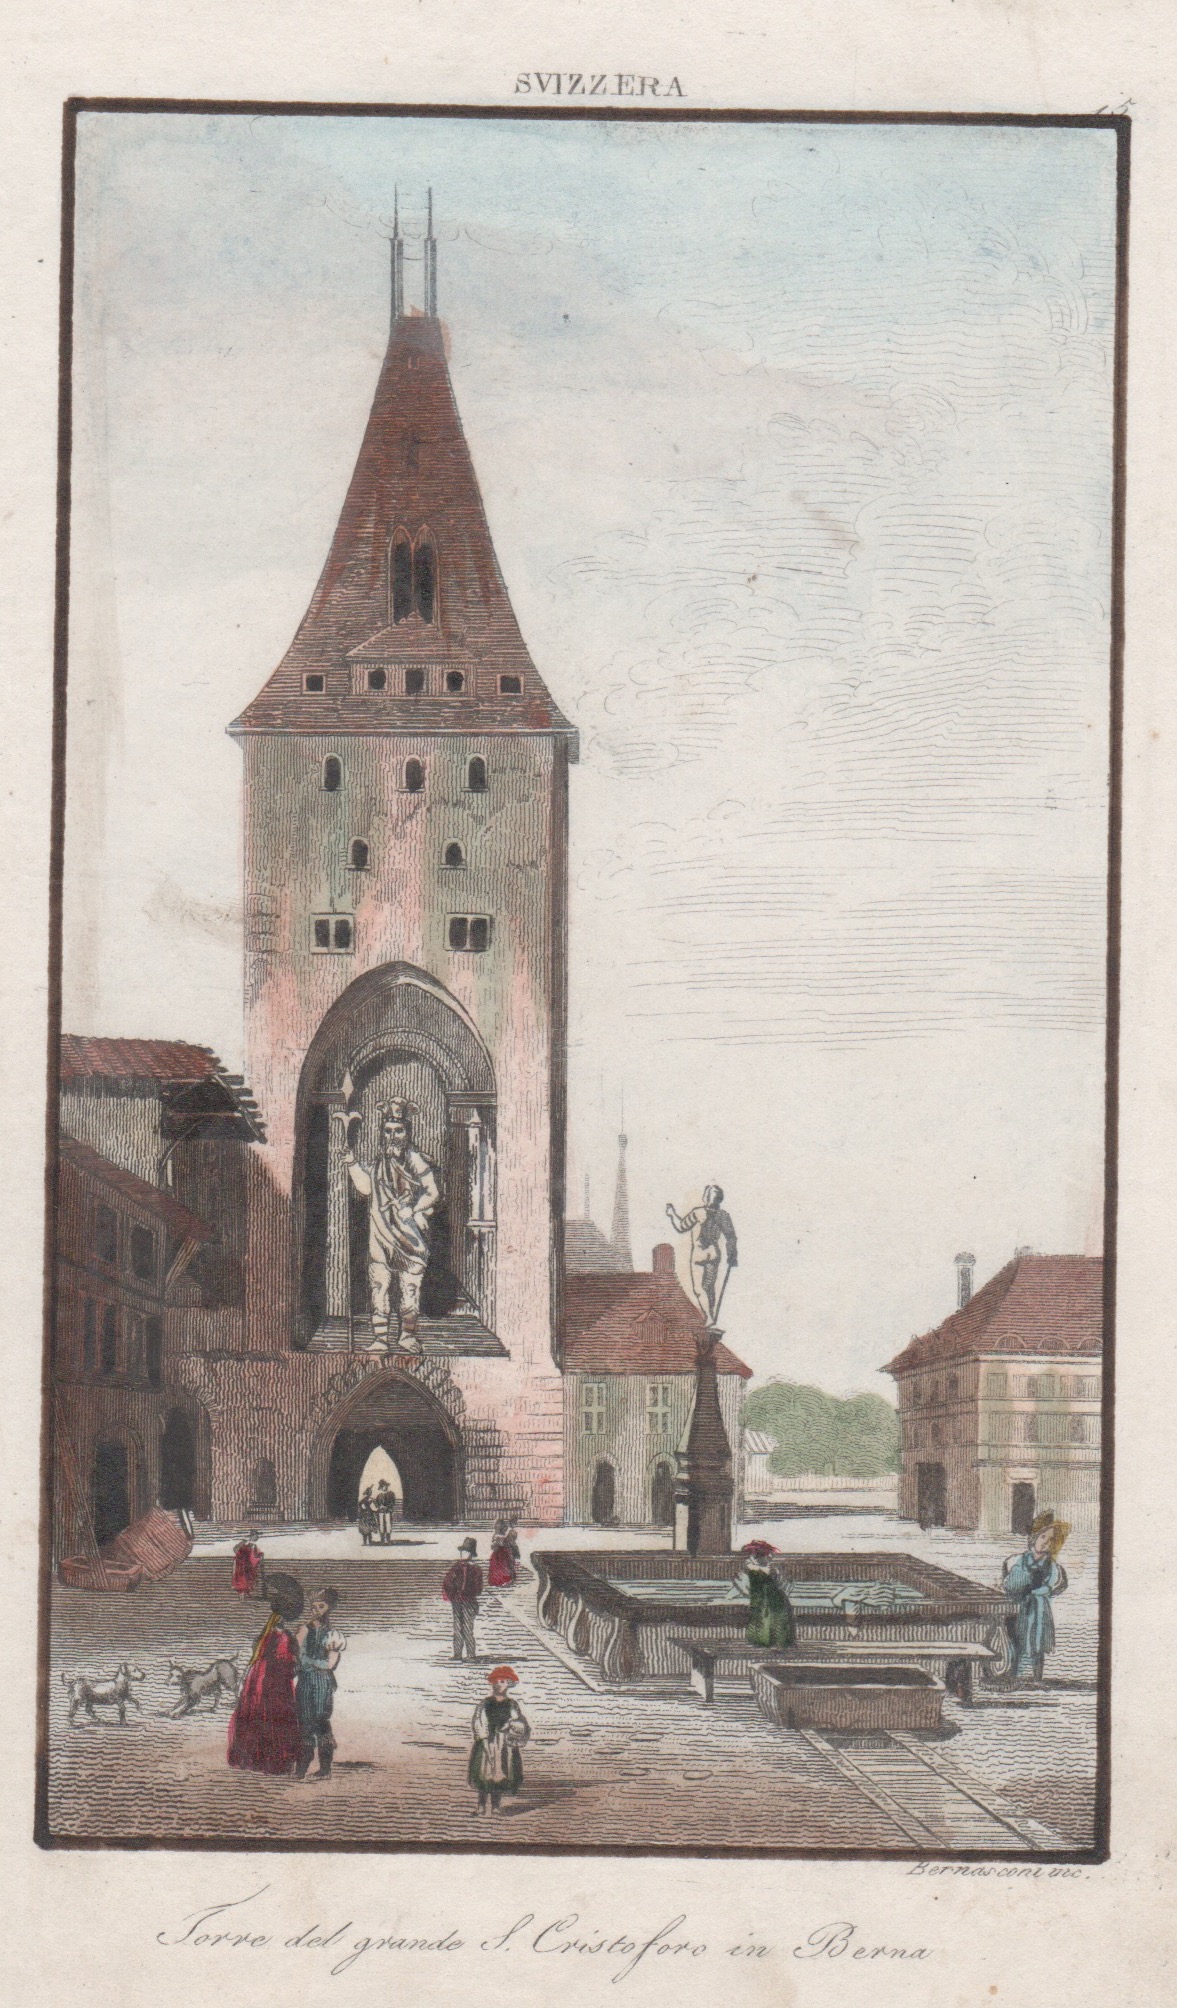 Bernasconi  Torre del grande S. Cristoforo in Berna